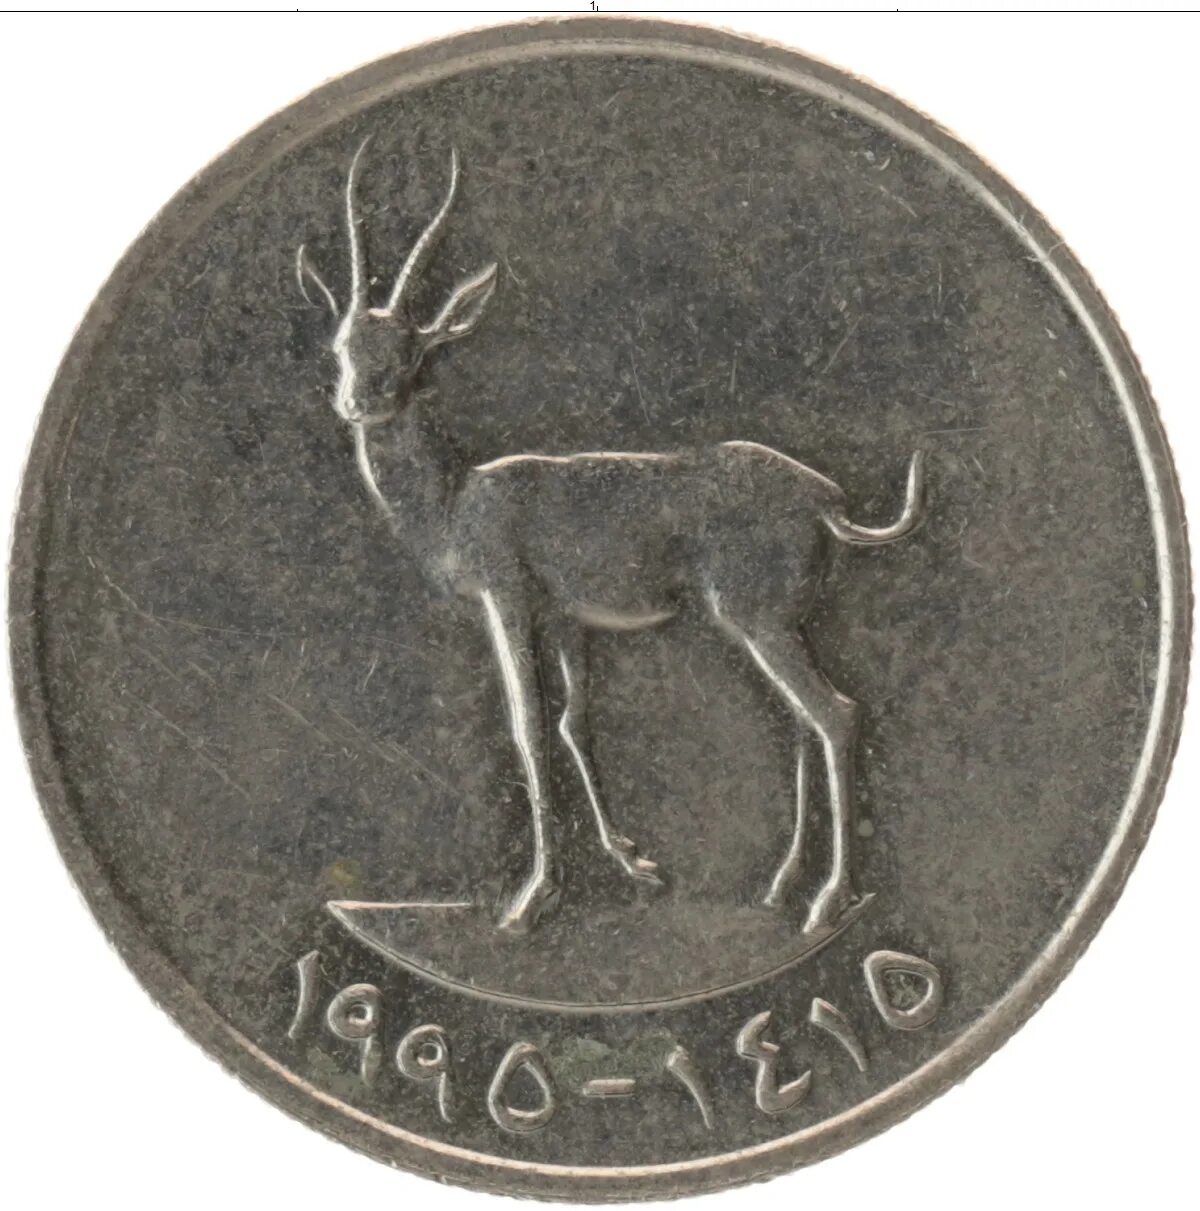 180 000 000 дирхам в рубли. 25 Филсов. 25 Филсов 1973-2011 ОАЭ. 25 Филсов ОАЭ. Арабские дирхамы монеты 25 филсов.